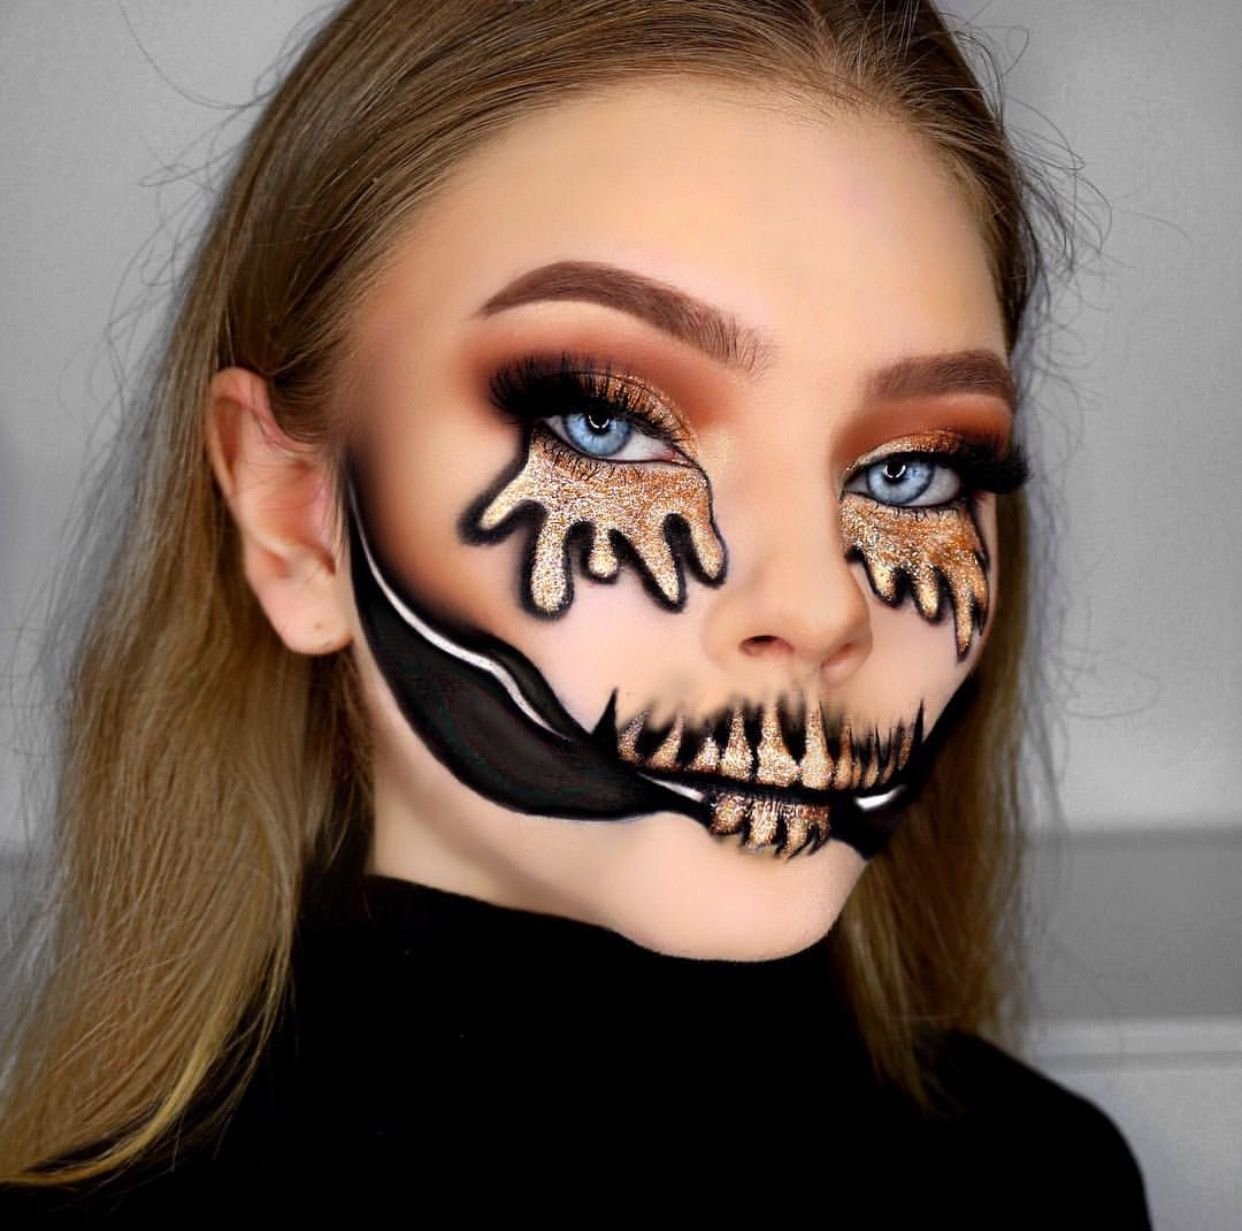 Scary Teeth Halloween Makeup Look